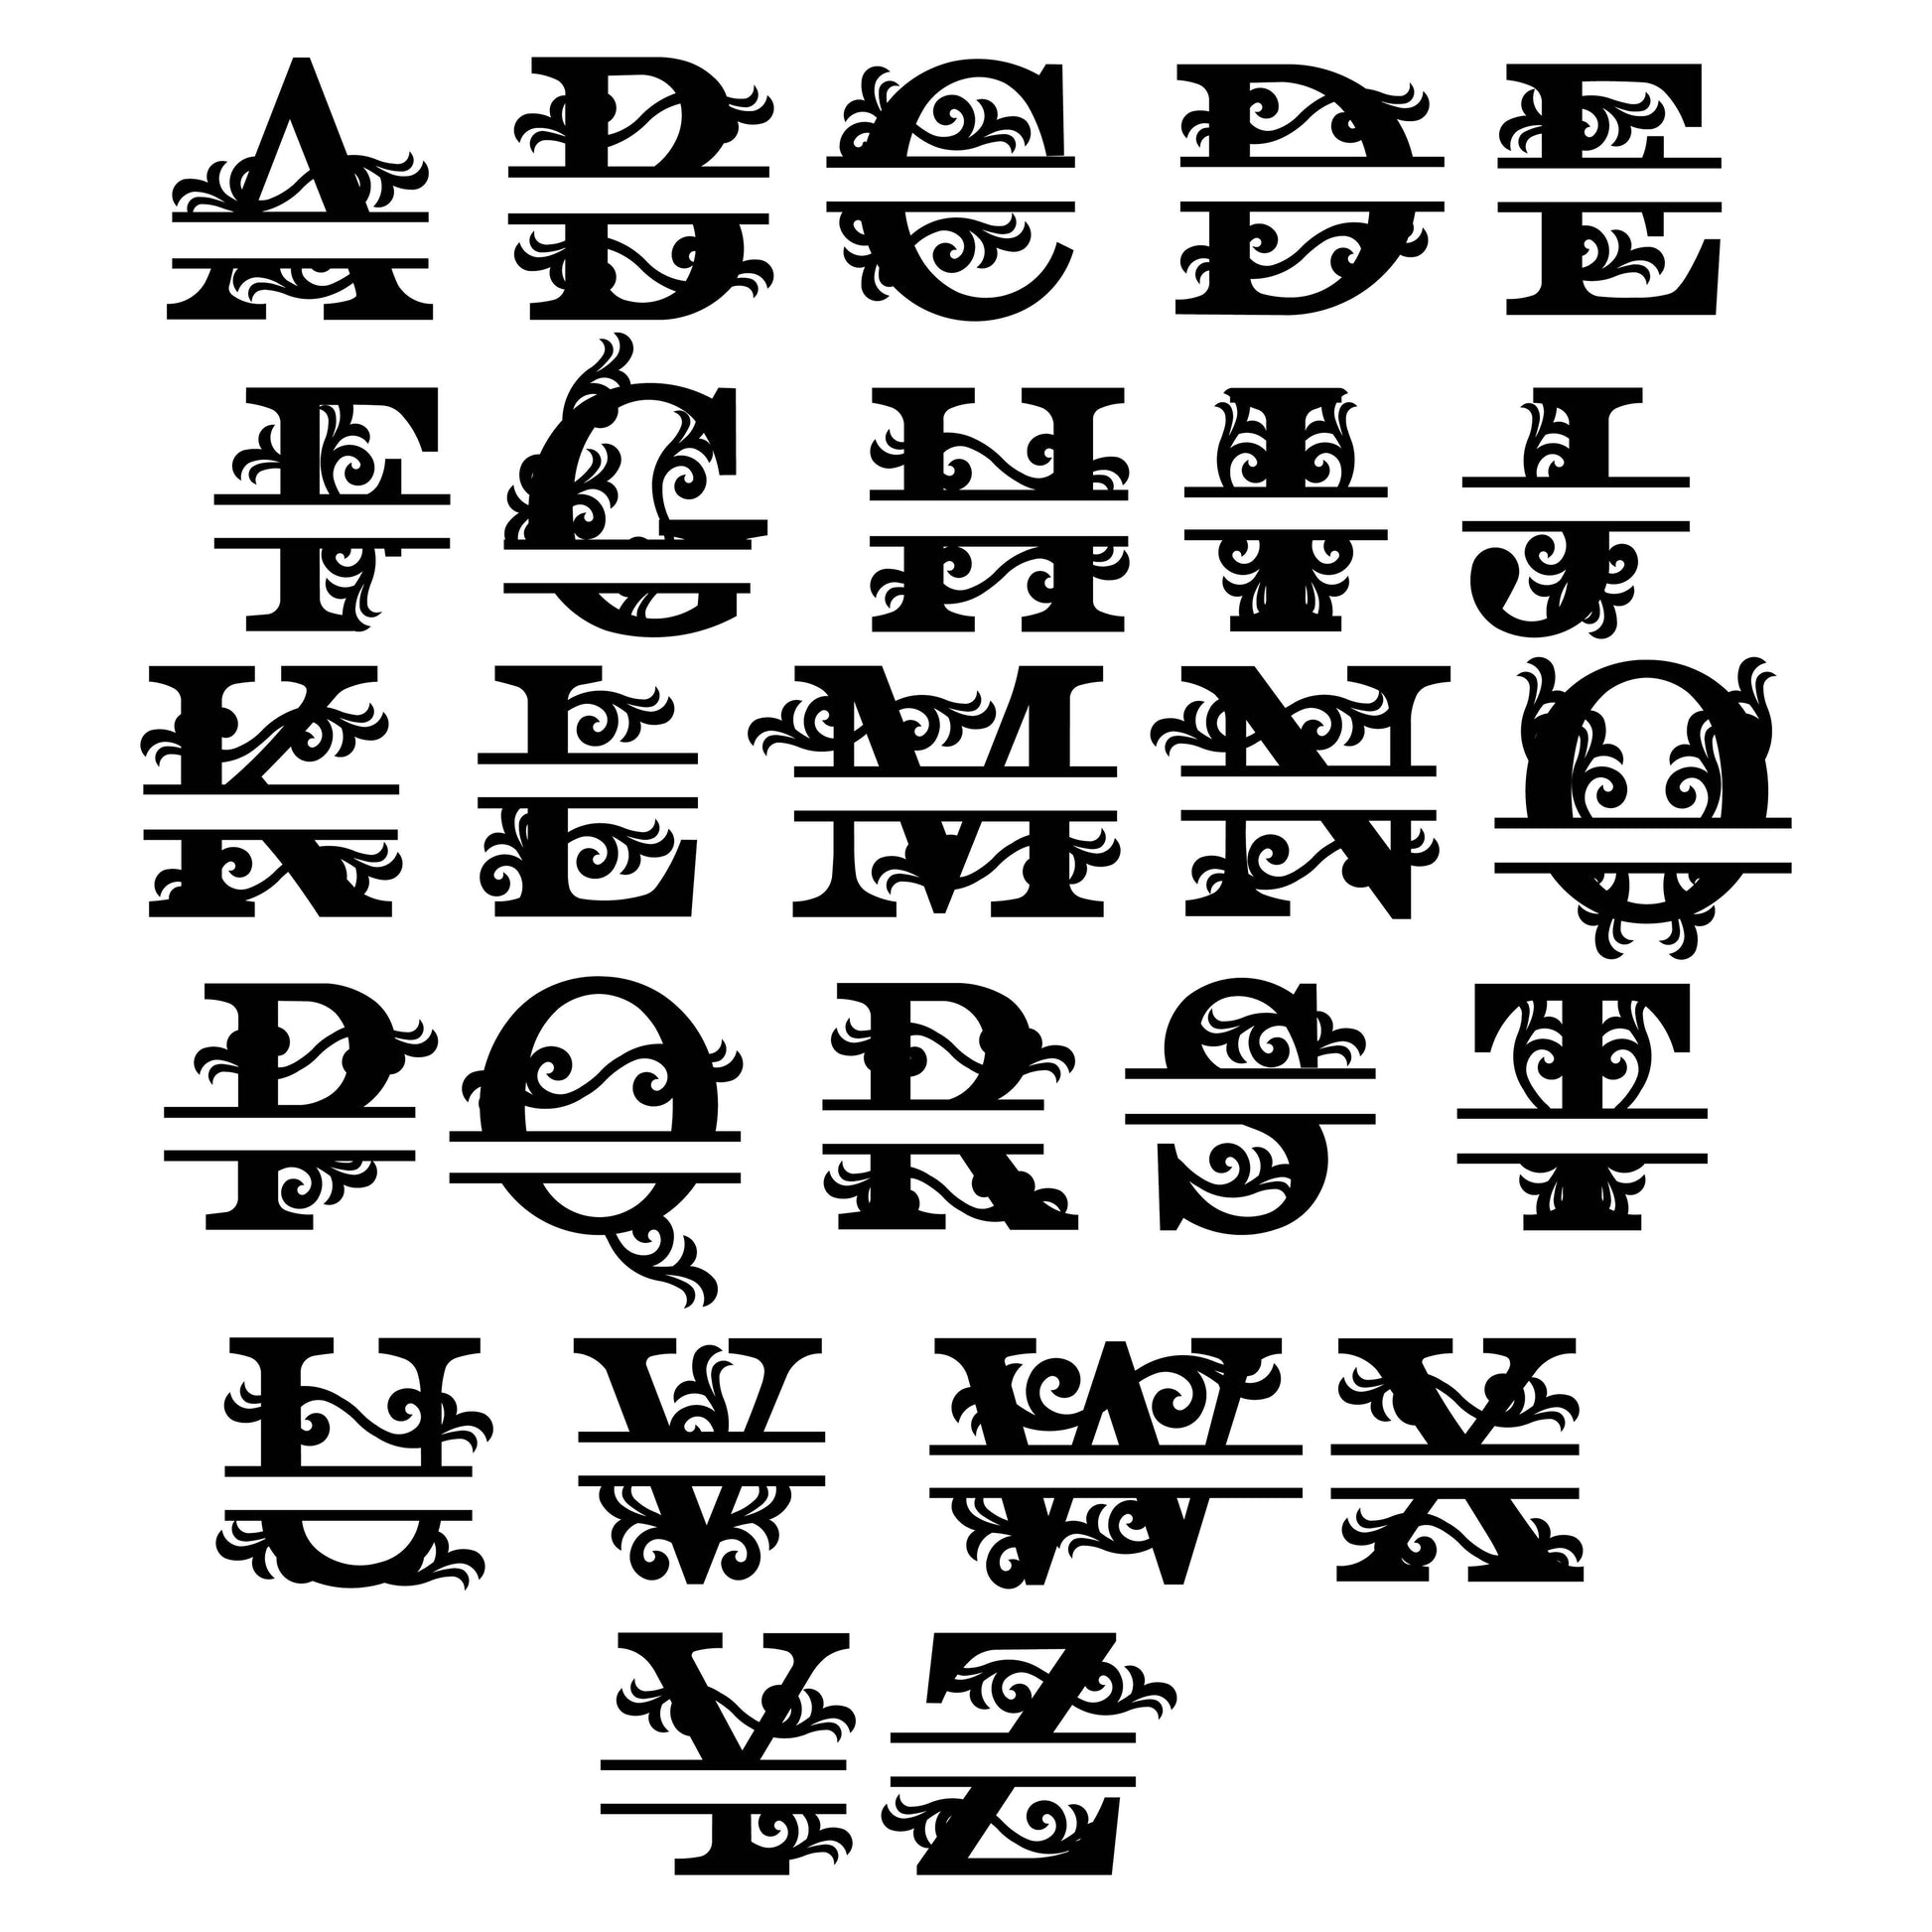 Floral Split Alphabet SVG 26 letters, Split Monogram SVG, 3